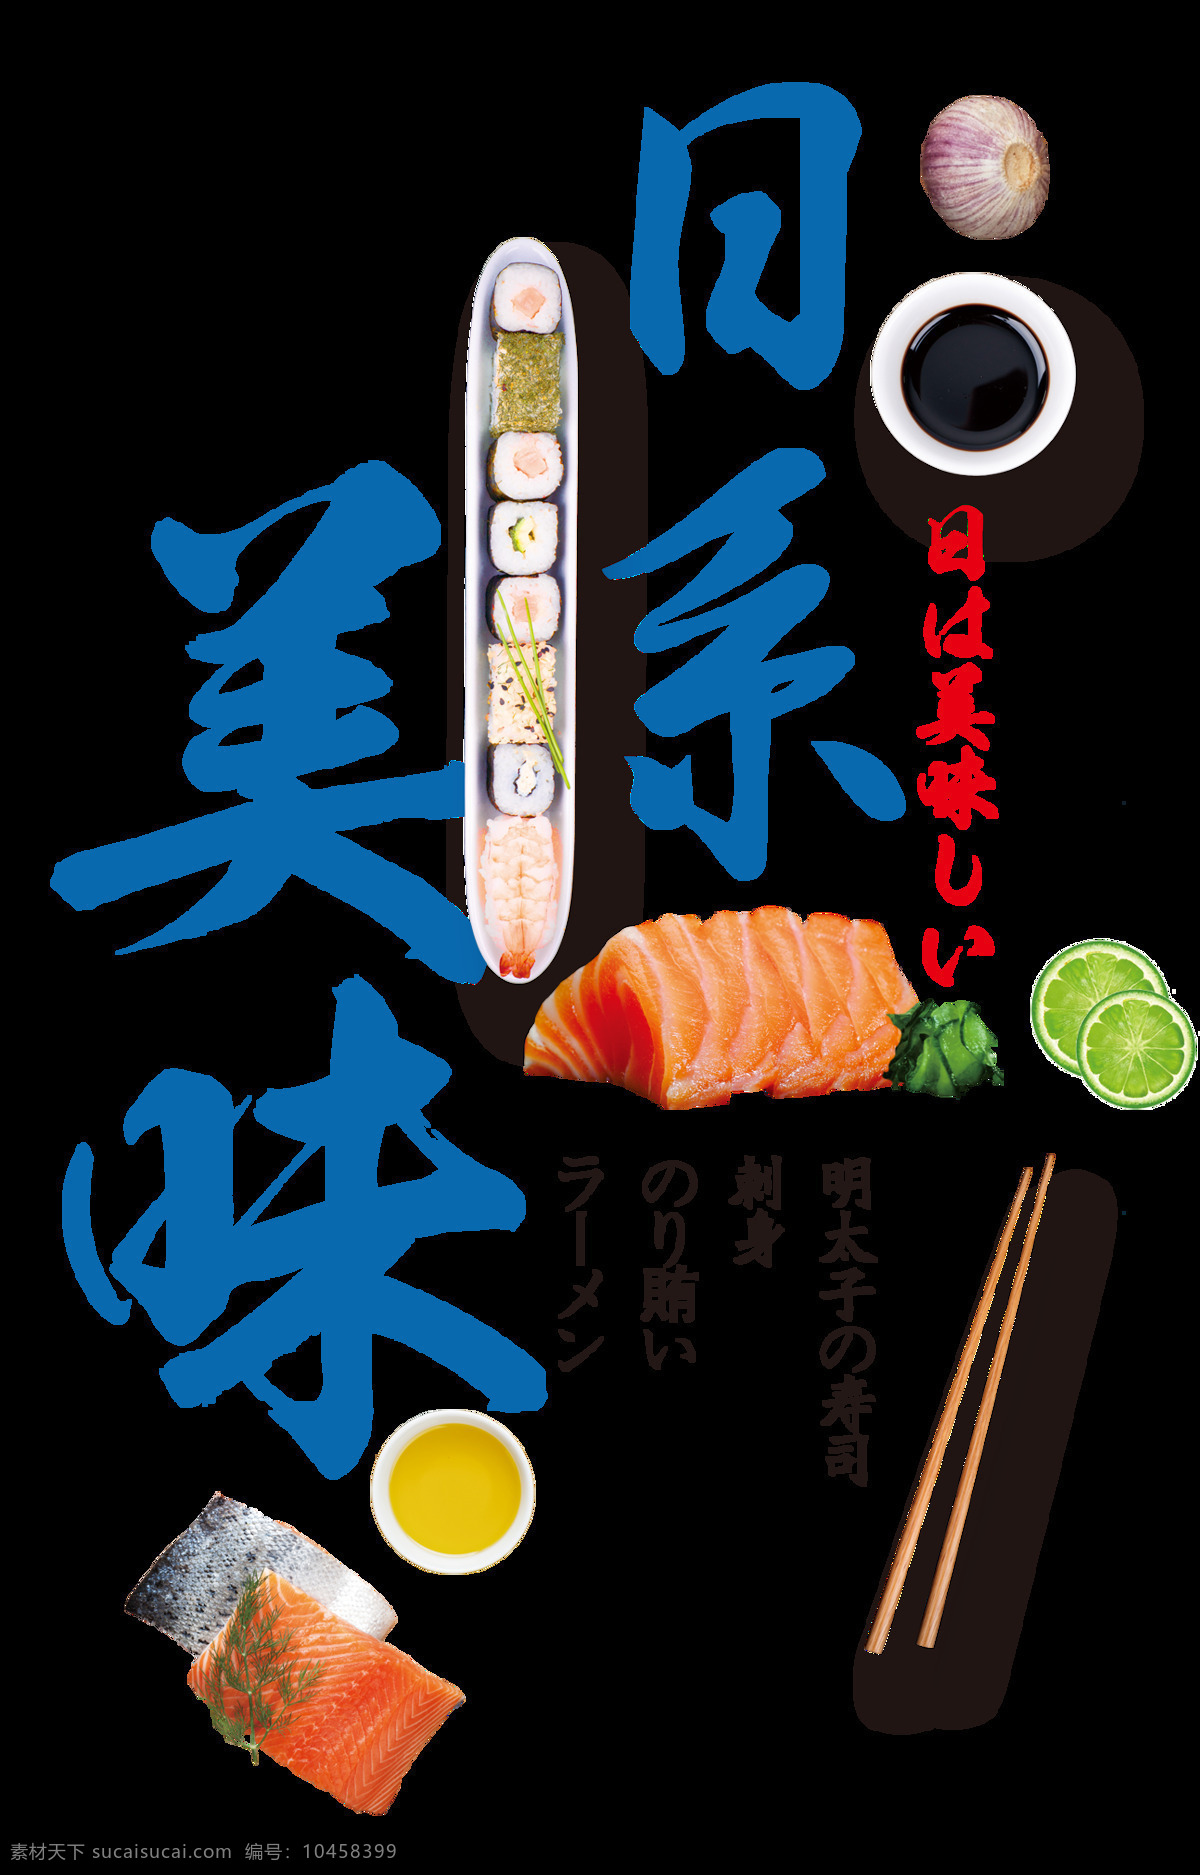 简约 清新 蓝色 字体 日式 料理 美食 产品 实物 刺身 蓝色字体 木制筷子 日式料理 日式美食 三文鱼